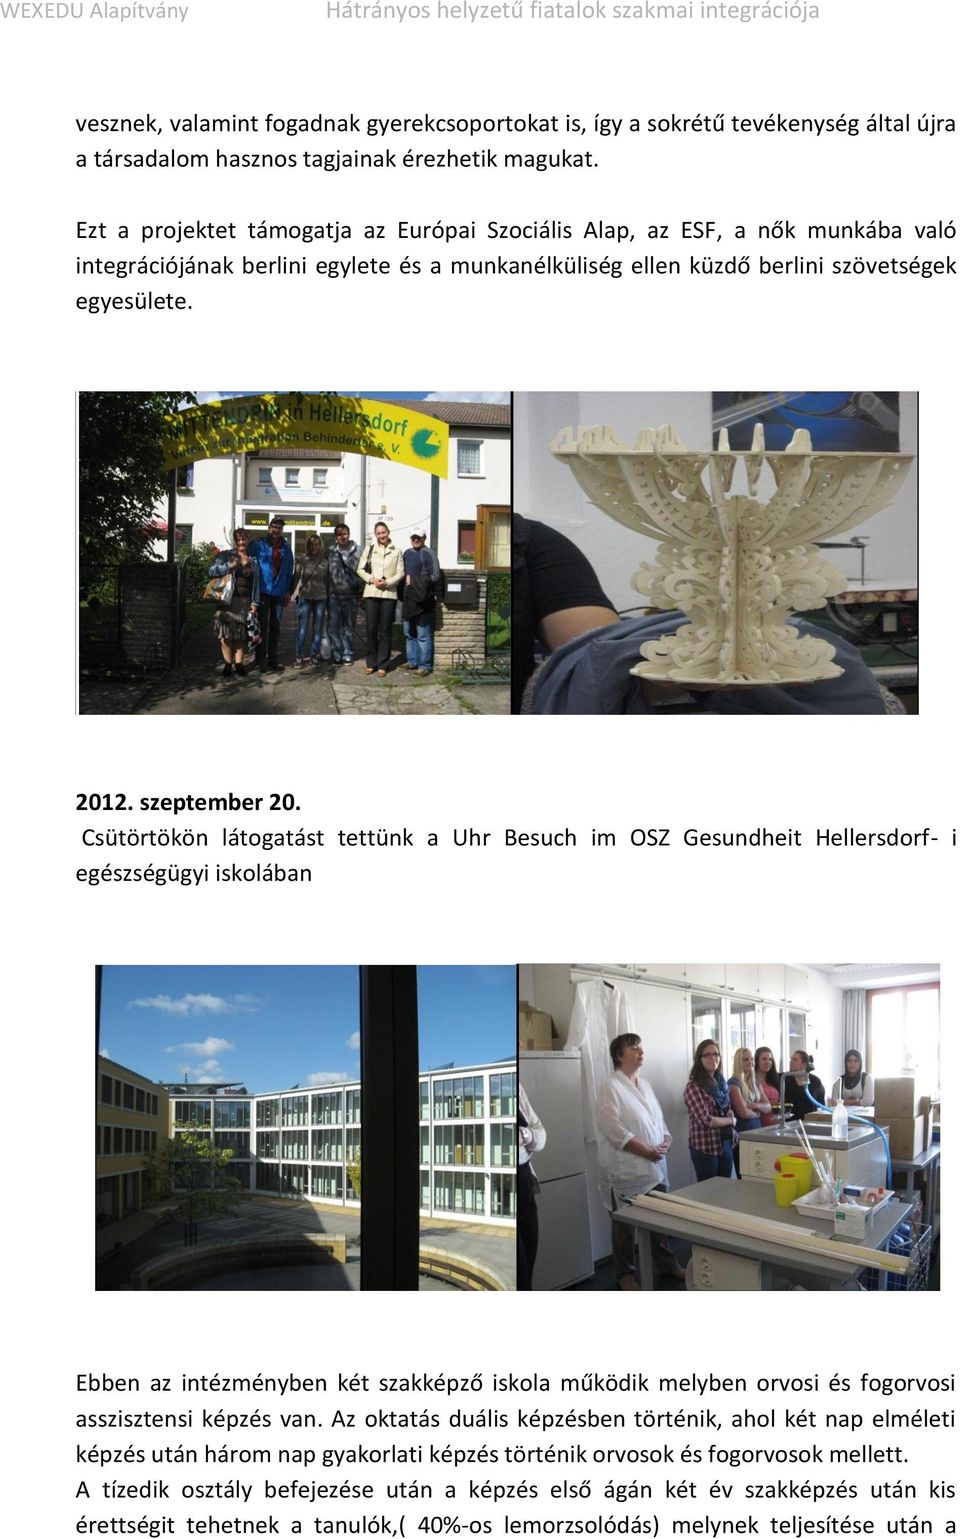 Csütörtökön látogatást tettünk a Uhr Besuch im OSZ Gesundheit Hellersdorf- i egészségügyi iskolában Ebben az intézményben két szakképző iskola működik melyben orvosi és fogorvosi asszisztensi képzés